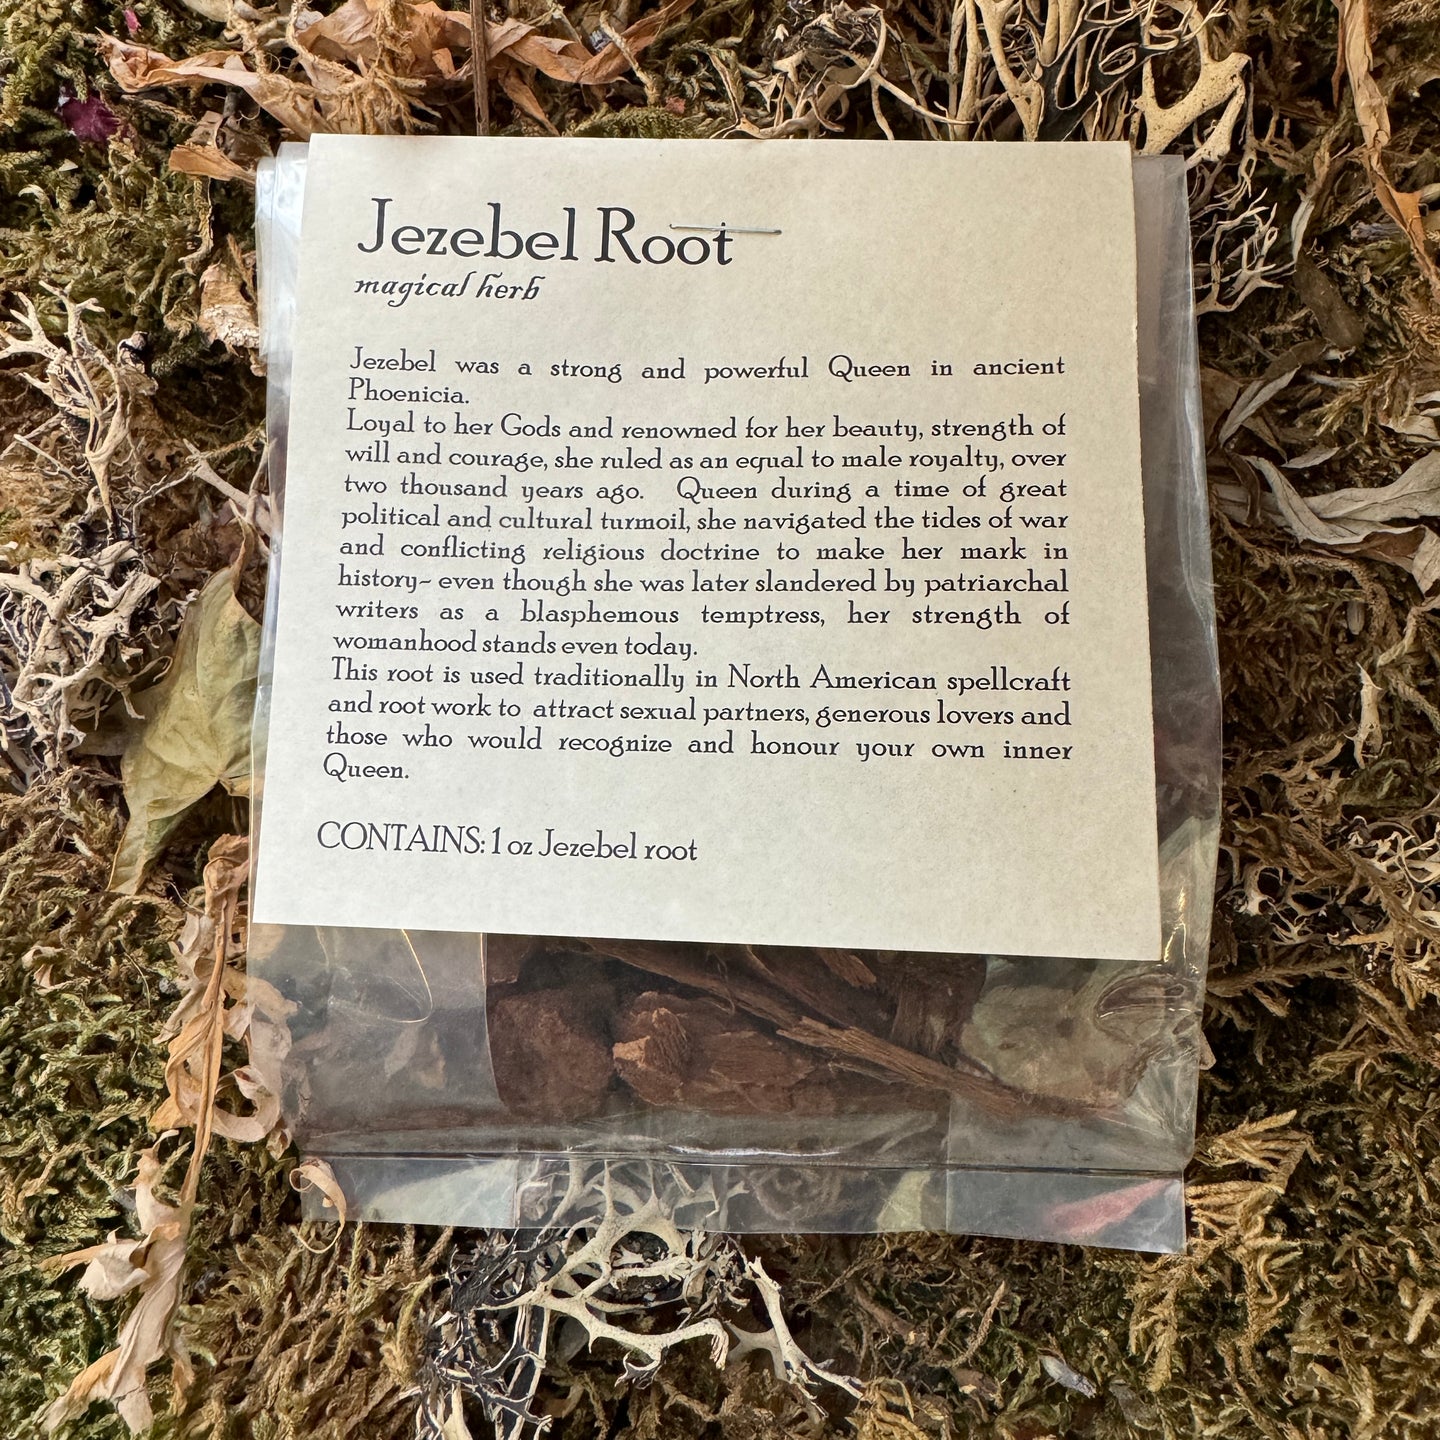 Jezebel Root